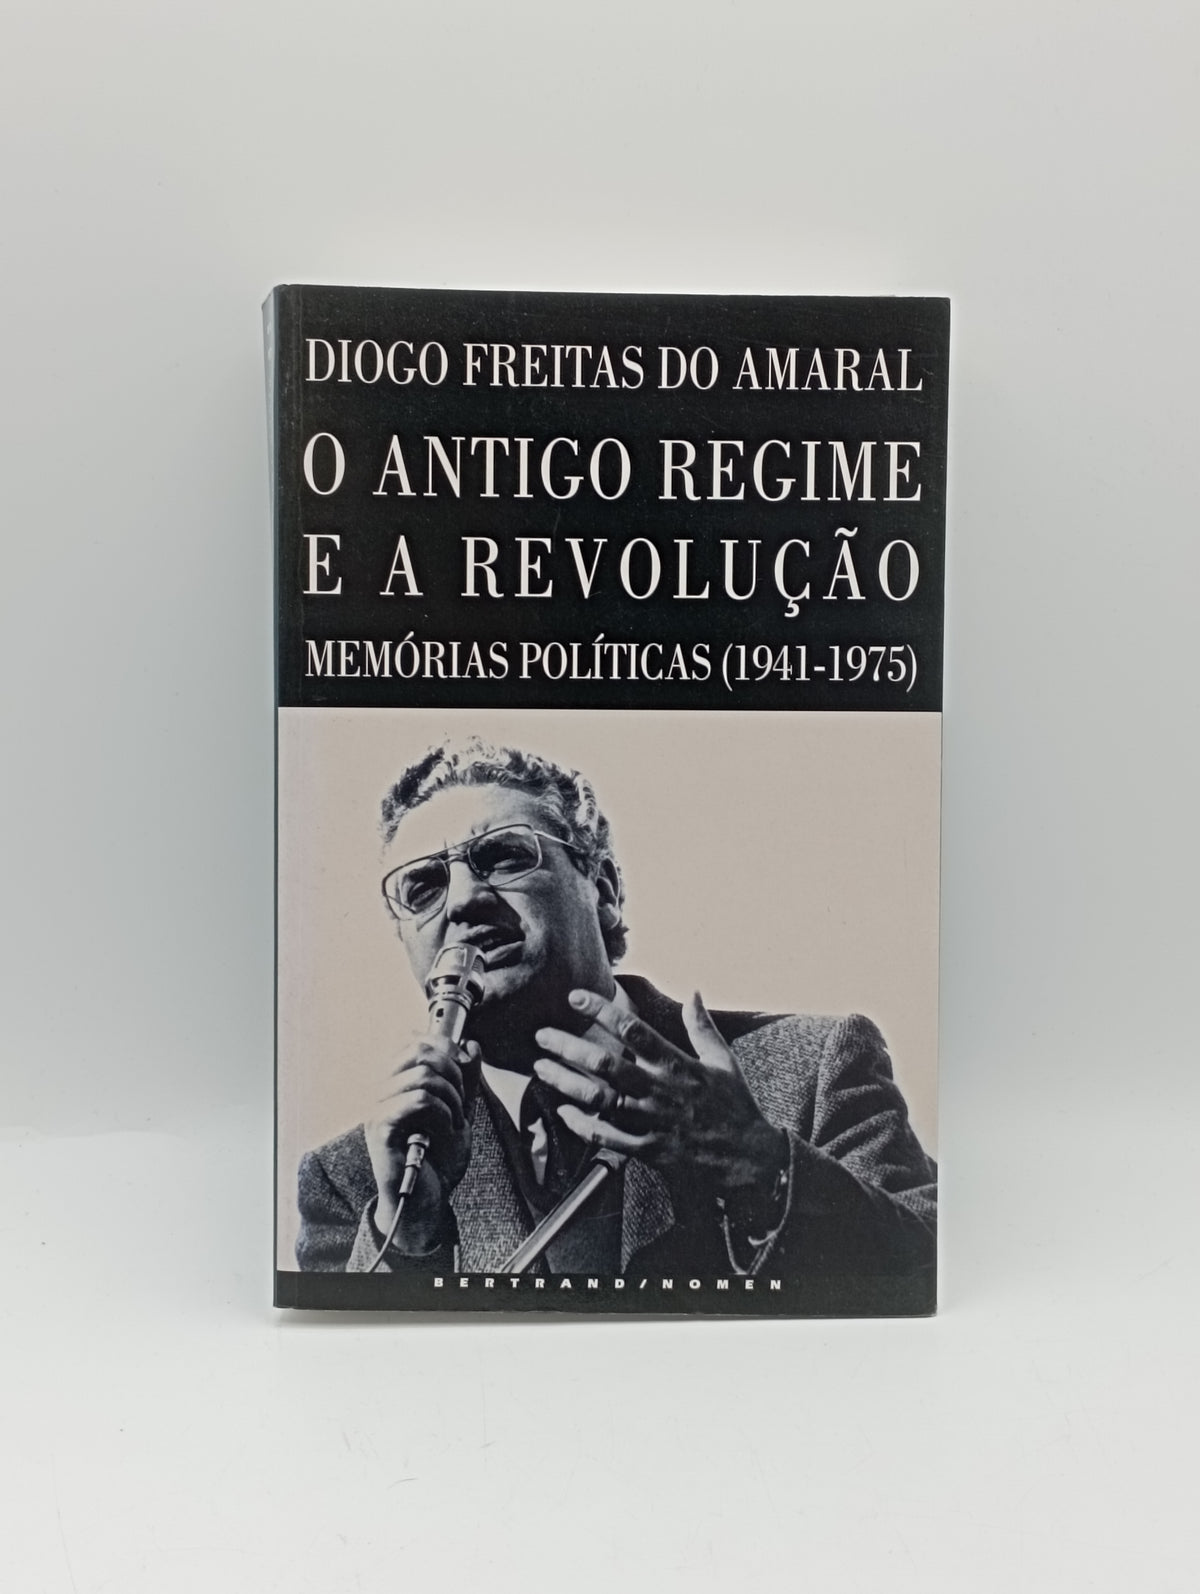 O Antigo Regime e a Revolução Memórias políticas 1941-1975